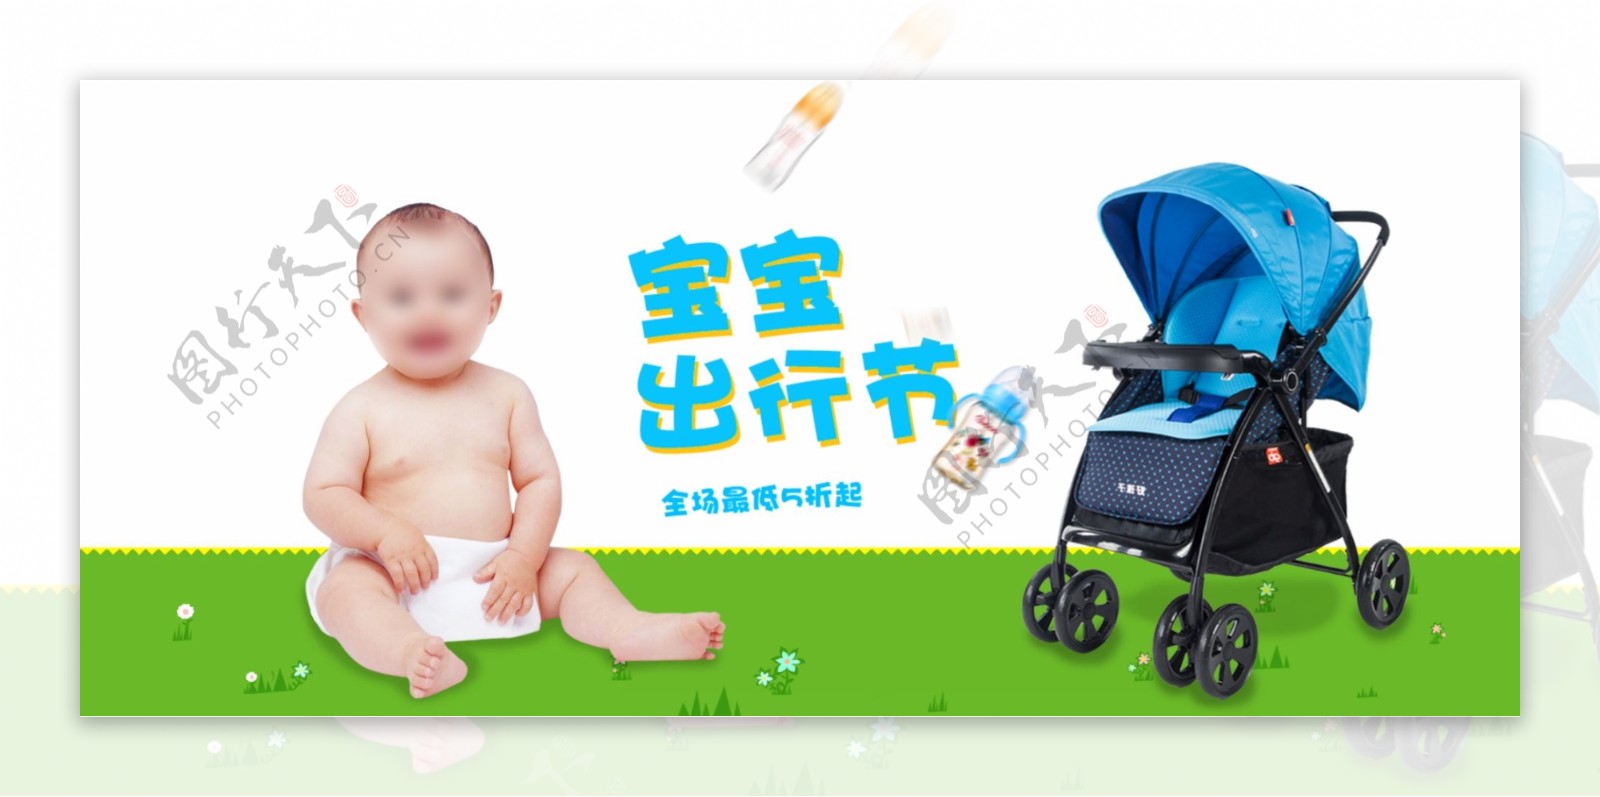 简约清新宝宝出行节婴儿车特卖电商海报